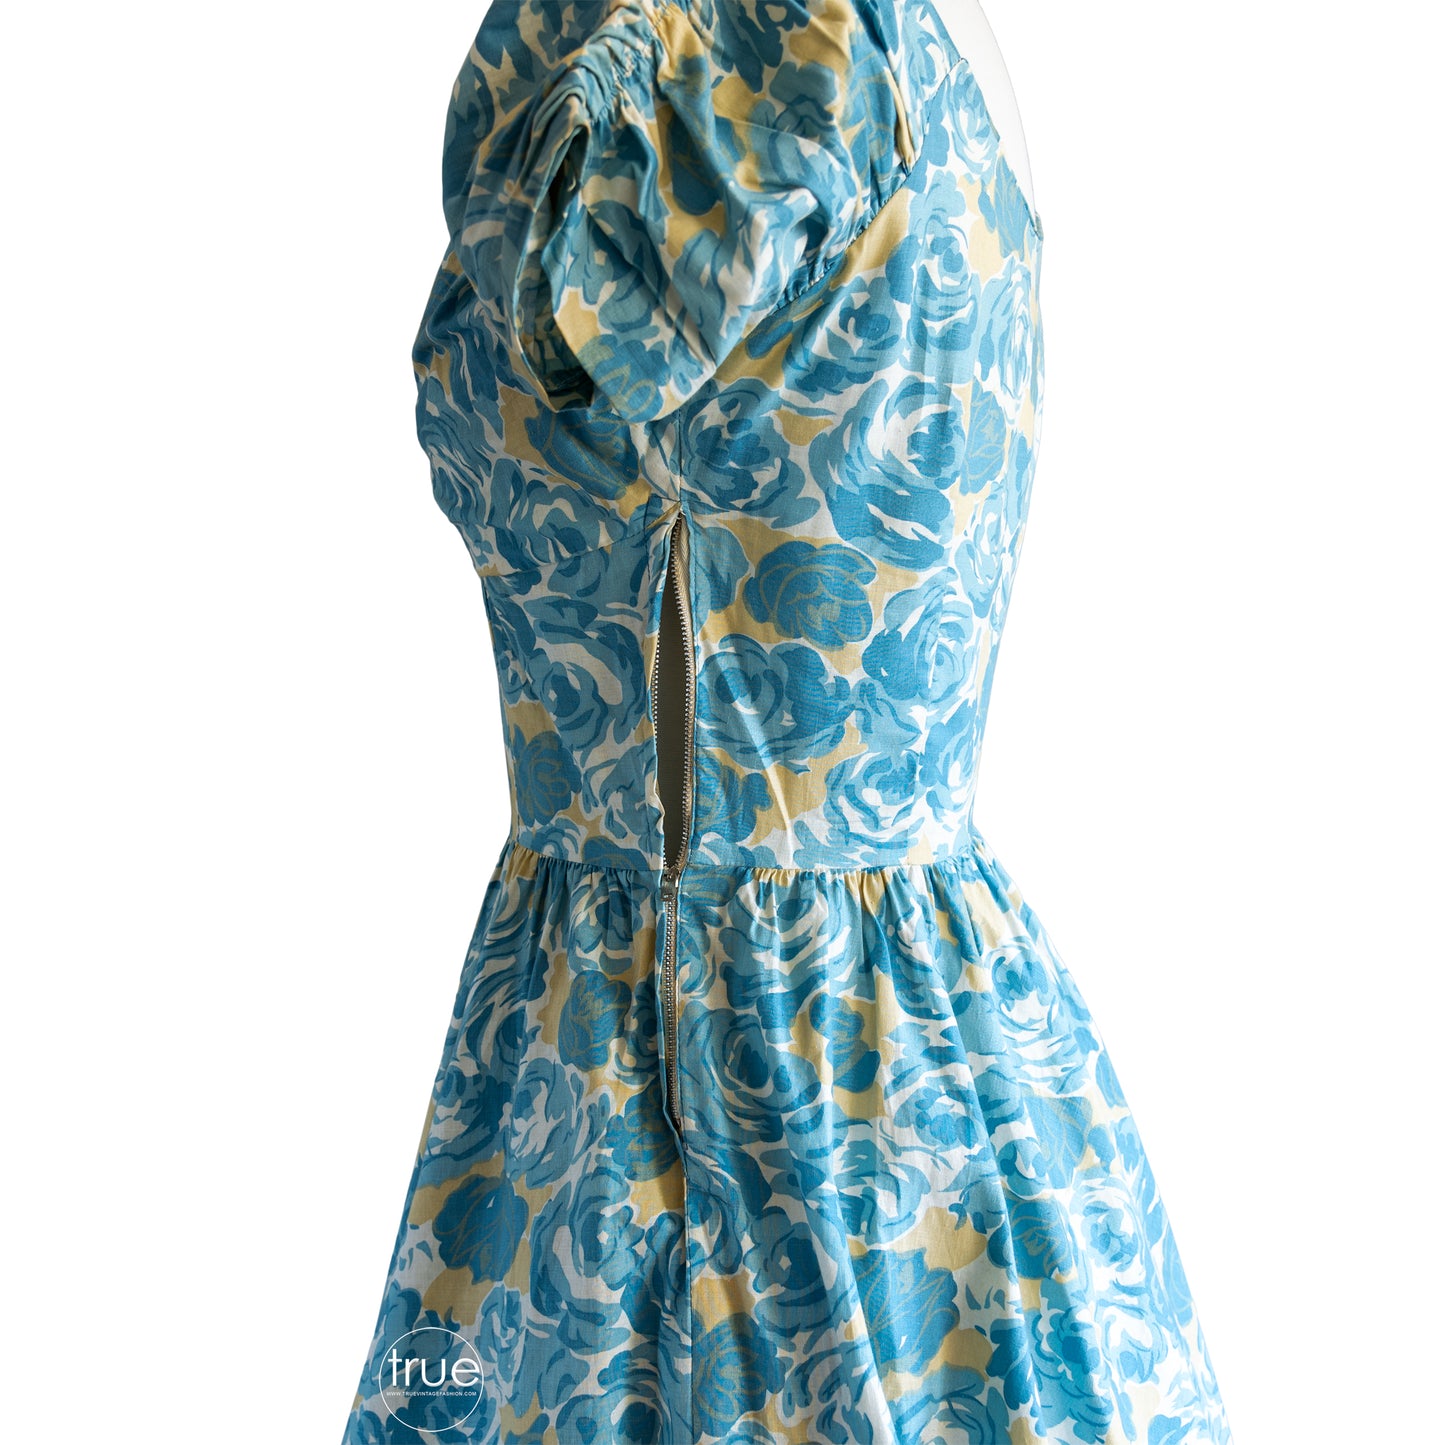 vintage 1950's dress ...classic JERRY GILDEN blue rose floral cotton dress